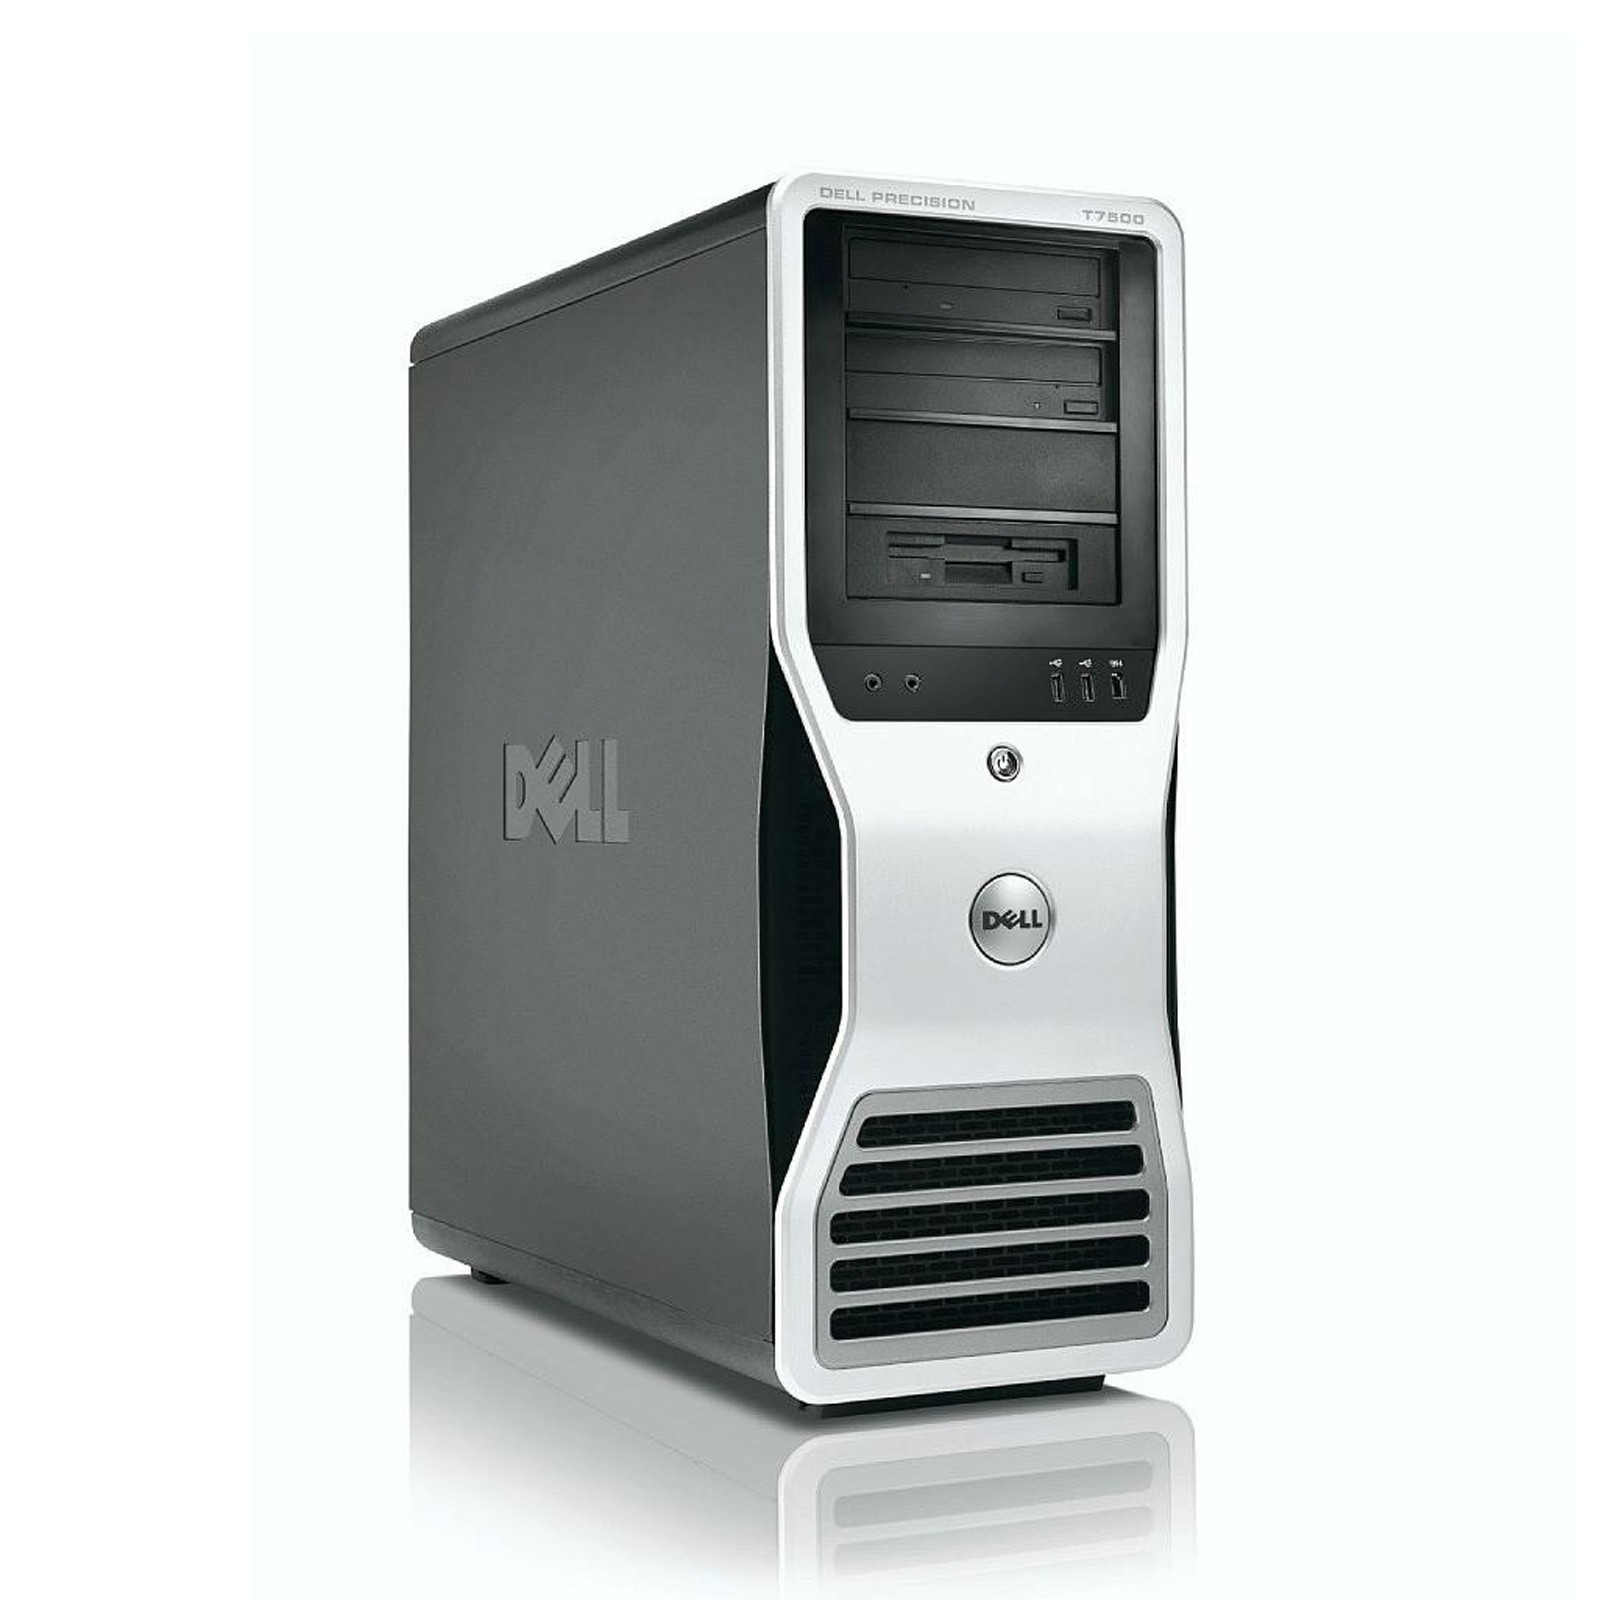 Dell Precision T7500 Tower - 1100W PSU (Grade A) Barebones Workstation